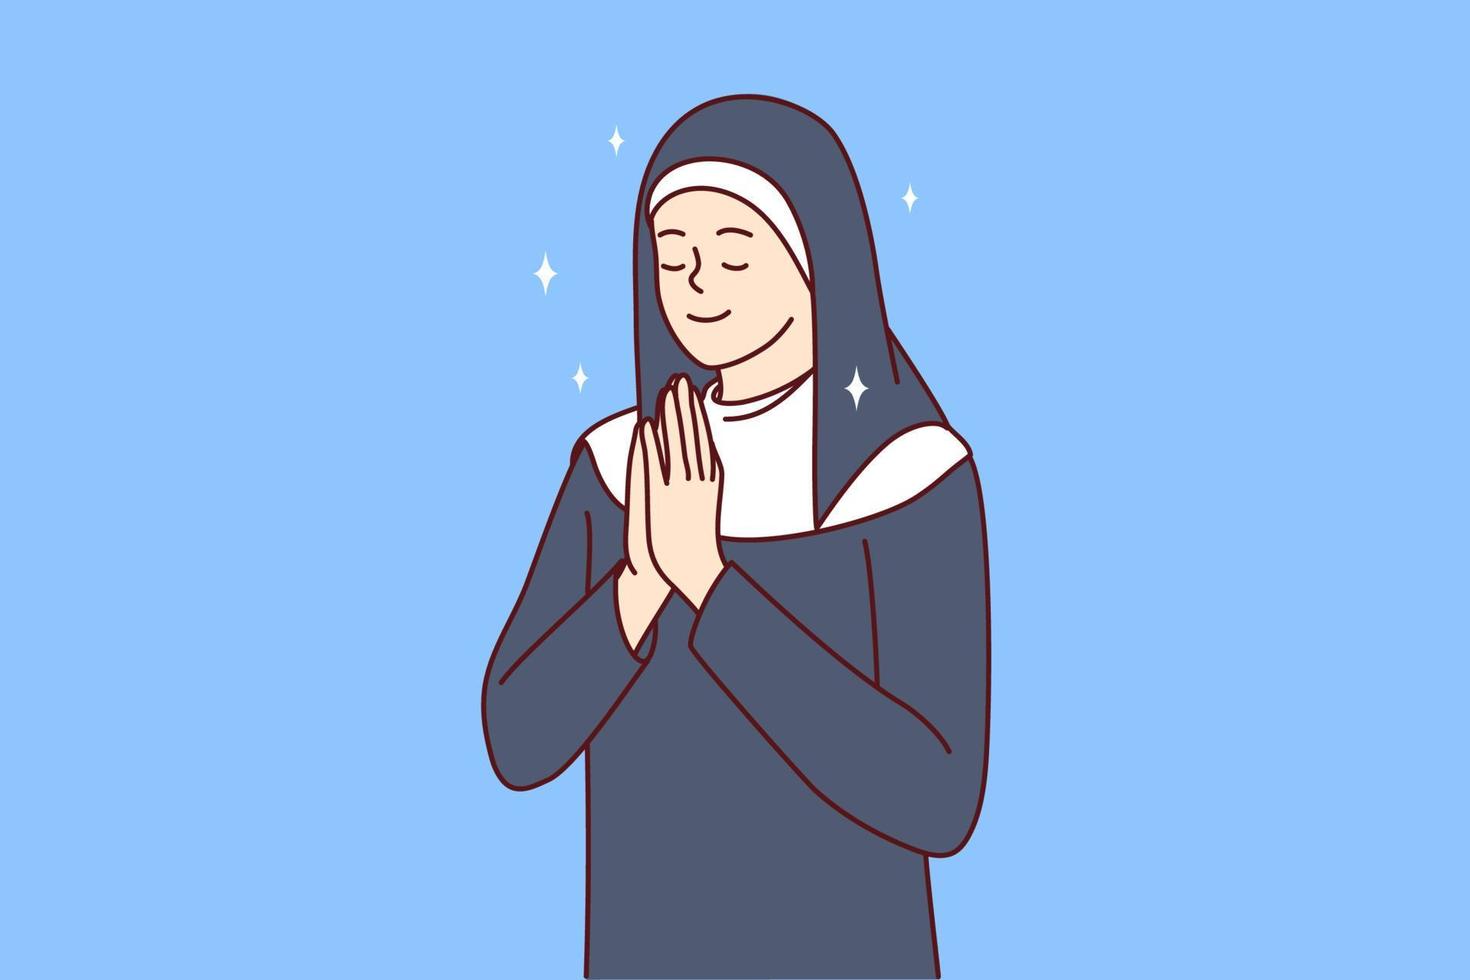 mulher positiva com roupas de freira católica fechando os olhos orando voltando-se para Deus em busca de ajuda ou conselho. menina rezando com as palmas das mãos juntas na frente do peito realiza ritual religioso. ilustração vetorial plana vetor